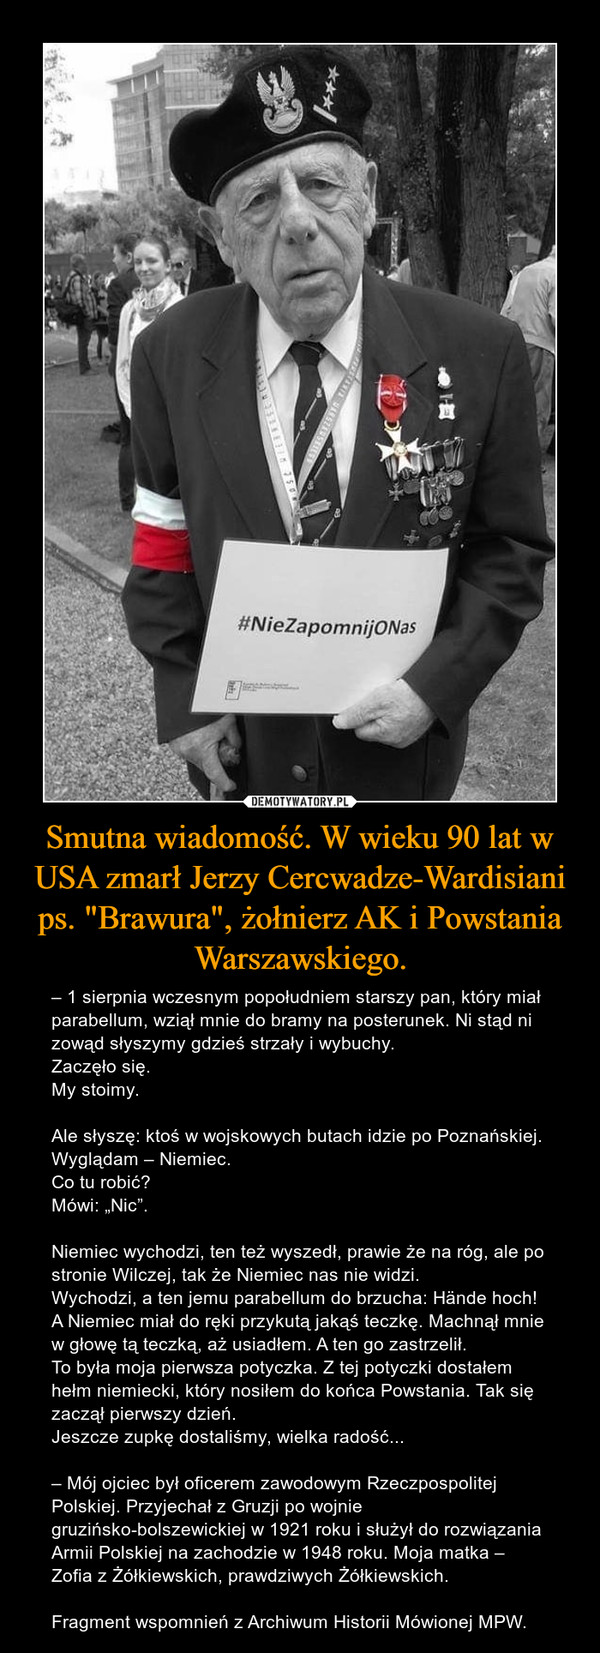 Smutna wiadomość. W wieku 90 lat w USA zmarł Jerzy Cercwadze-Wardisiani ps. "Brawura", żołnierz AK i Powstania Warszawskiego.